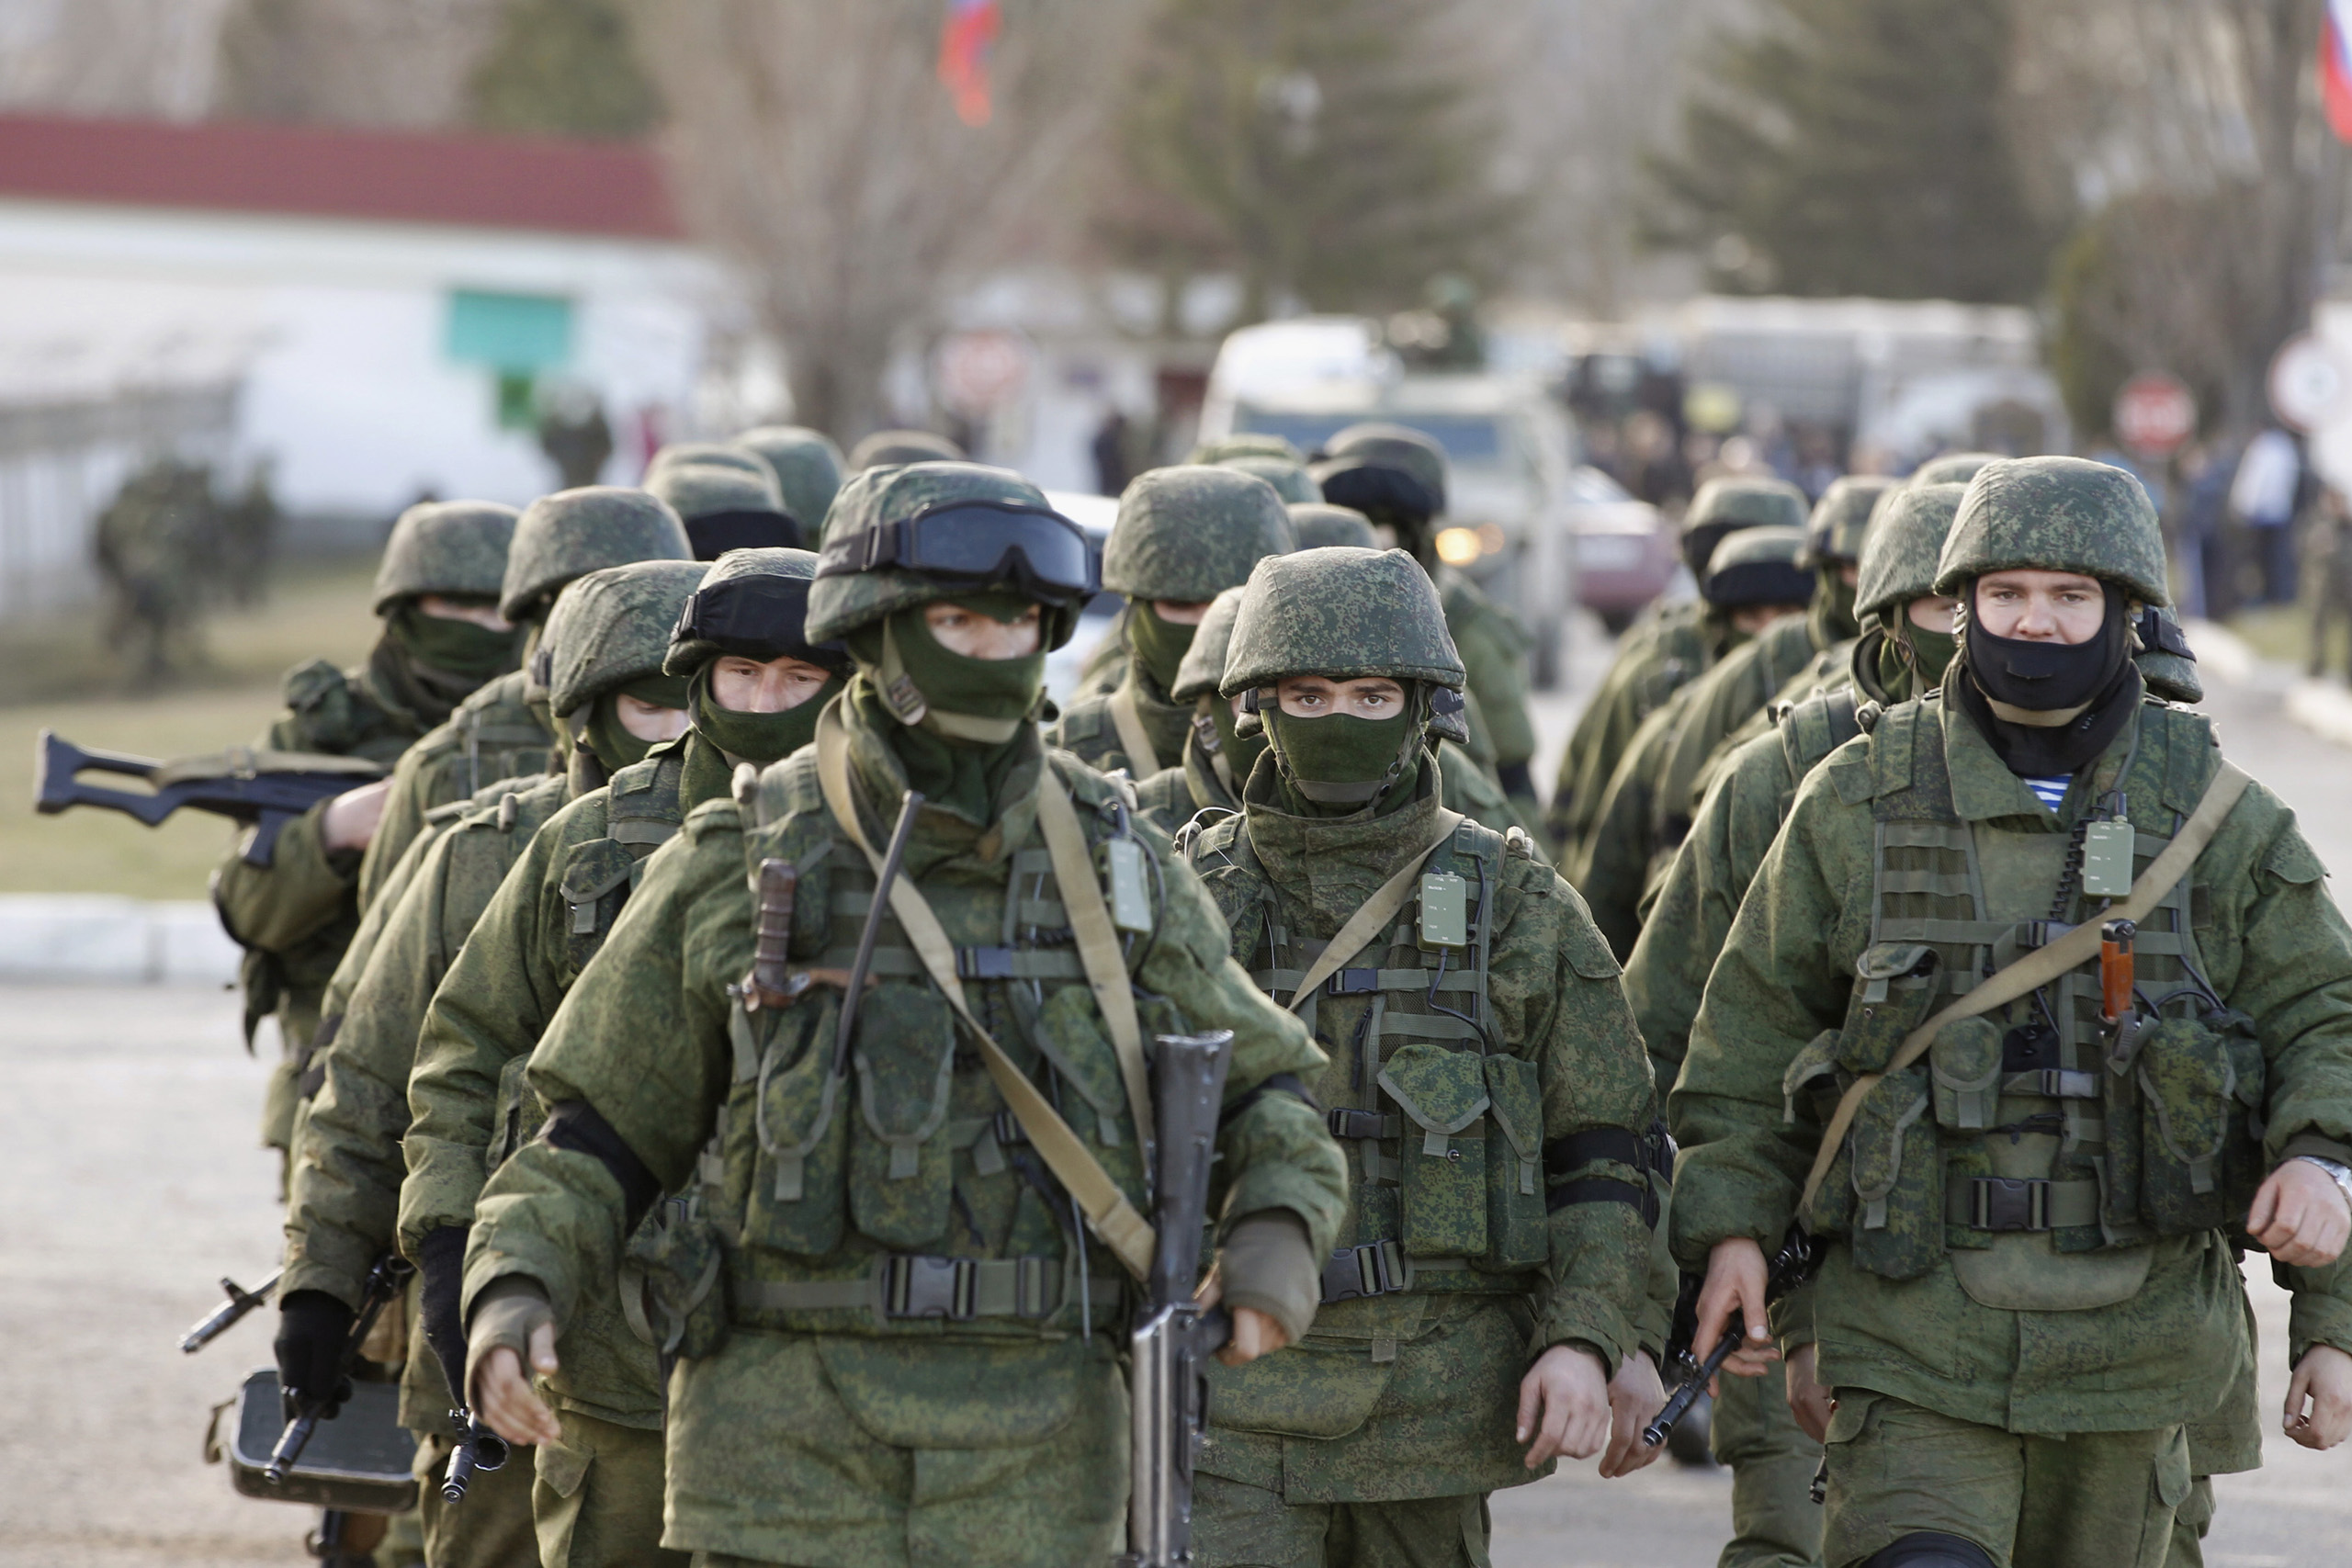 Rusiya ordusunda dəhşət: Əsgər 3 hərbiçini öldürdü, 2-ni yaraladı